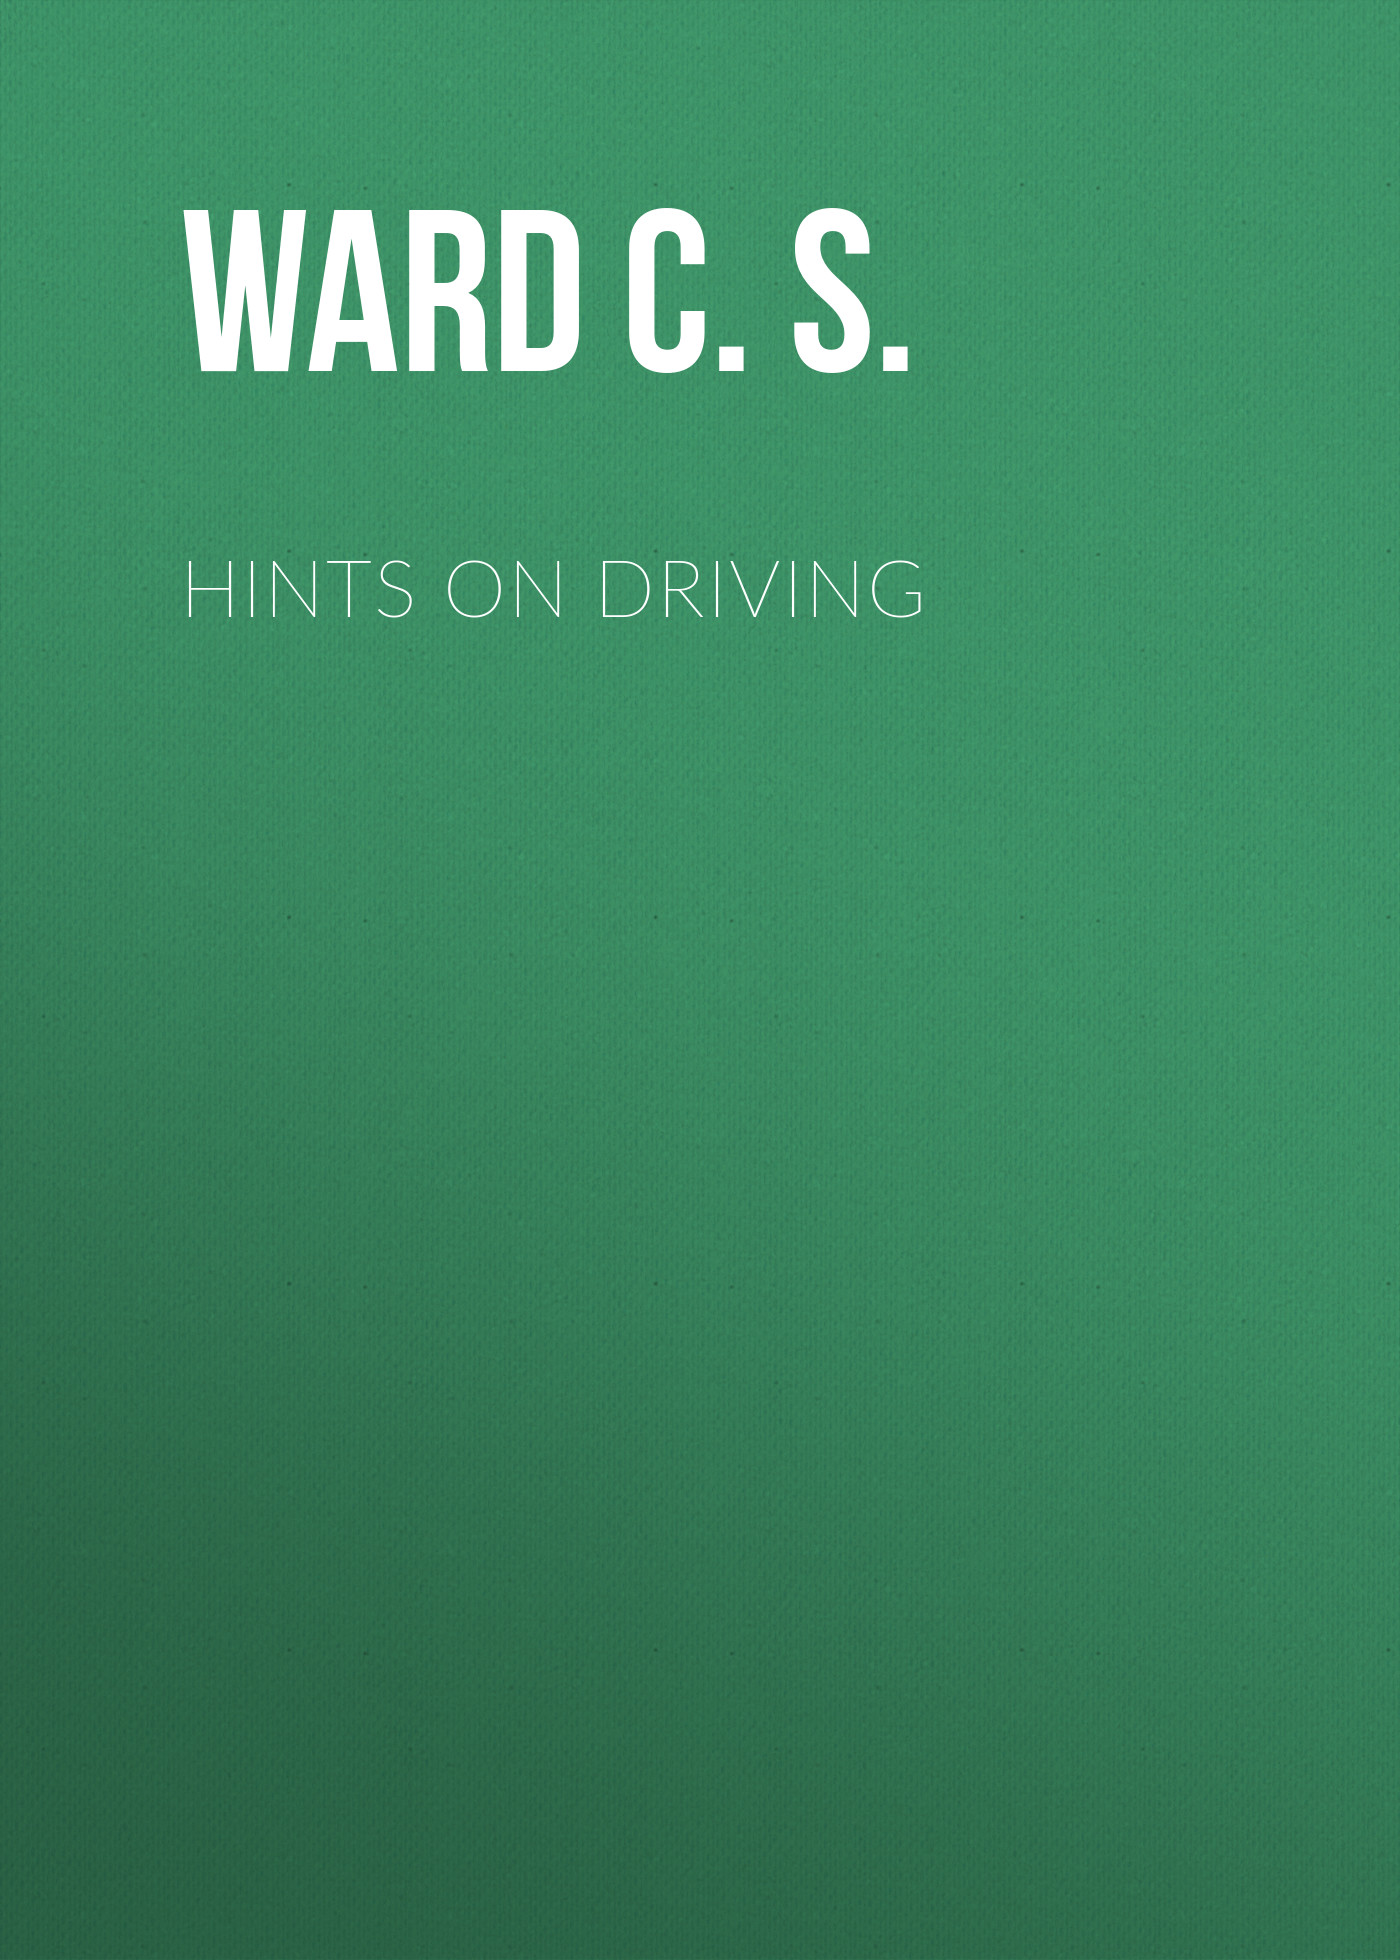 Книга Hints on Driving из серии , созданная C. S. Ward, может относится к жанру Зарубежная классика, Биология, Зарубежная образовательная литература, Зарубежная старинная литература. Стоимость электронной книги Hints on Driving с идентификатором 34336682 составляет 0 руб.